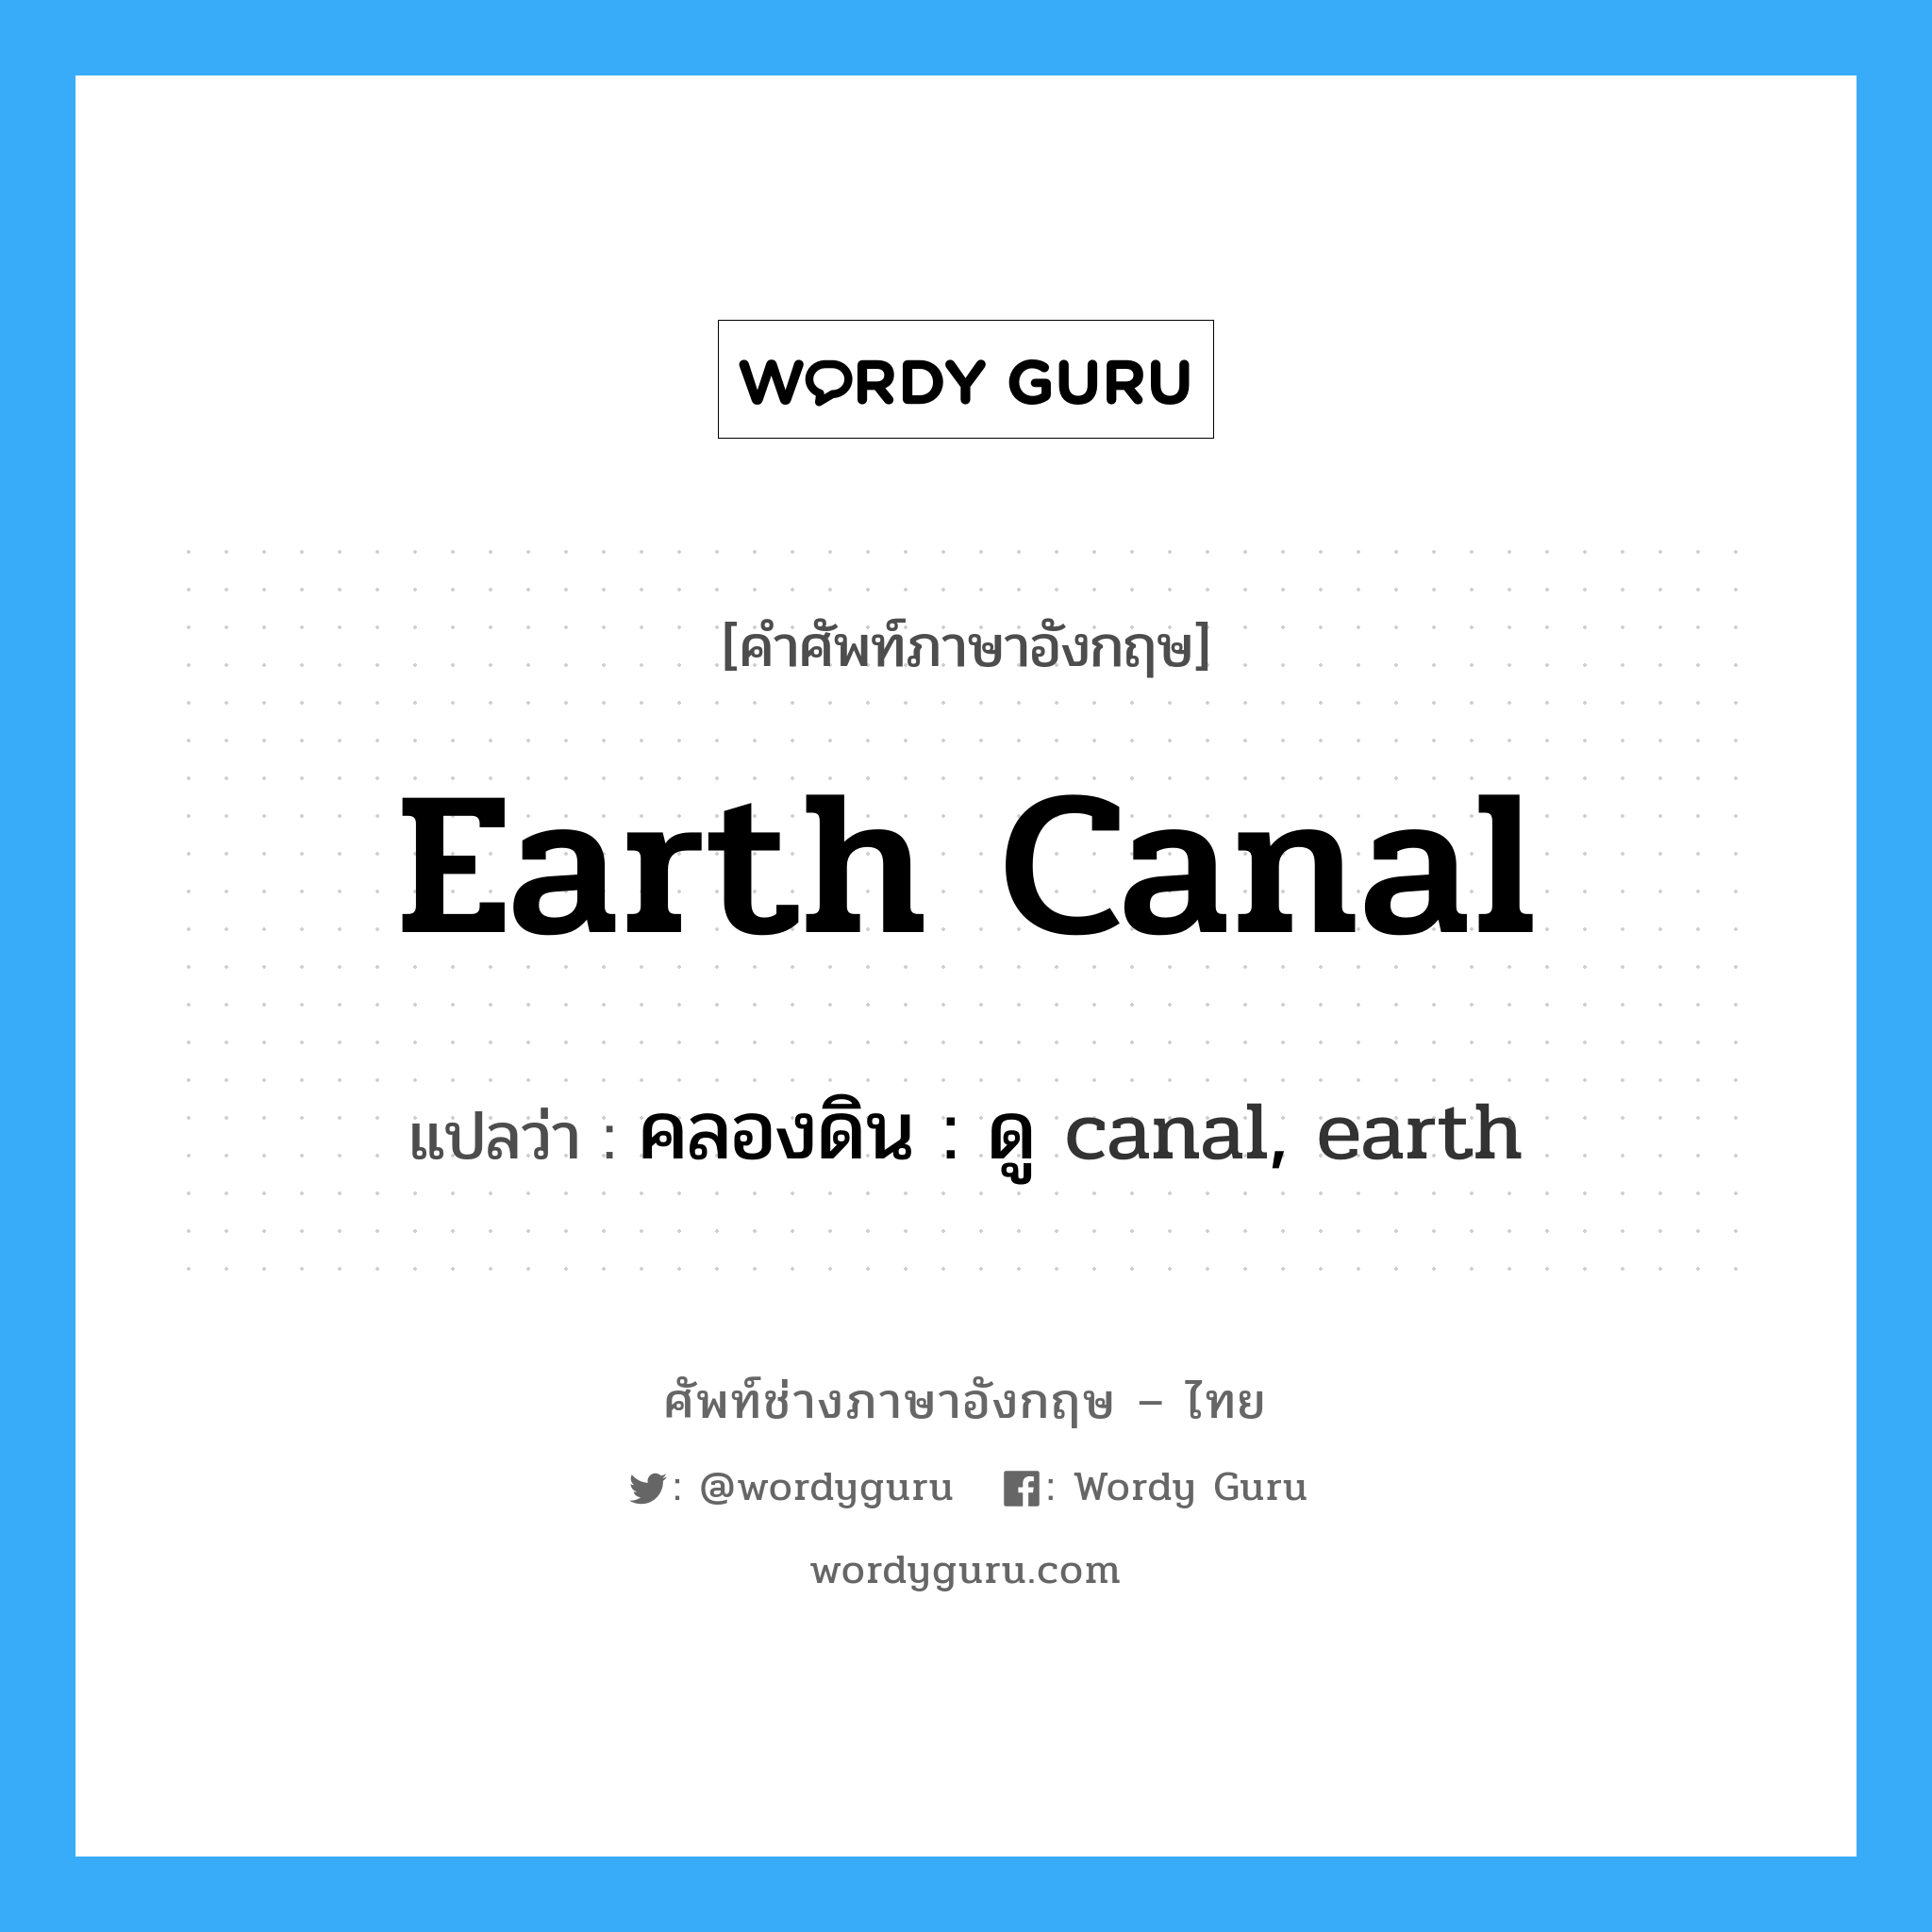 คลองดิน : ดู canal, earth ภาษาอังกฤษ?, คำศัพท์ช่างภาษาอังกฤษ - ไทย คลองดิน : ดู canal, earth คำศัพท์ภาษาอังกฤษ คลองดิน : ดู canal, earth แปลว่า earth canal